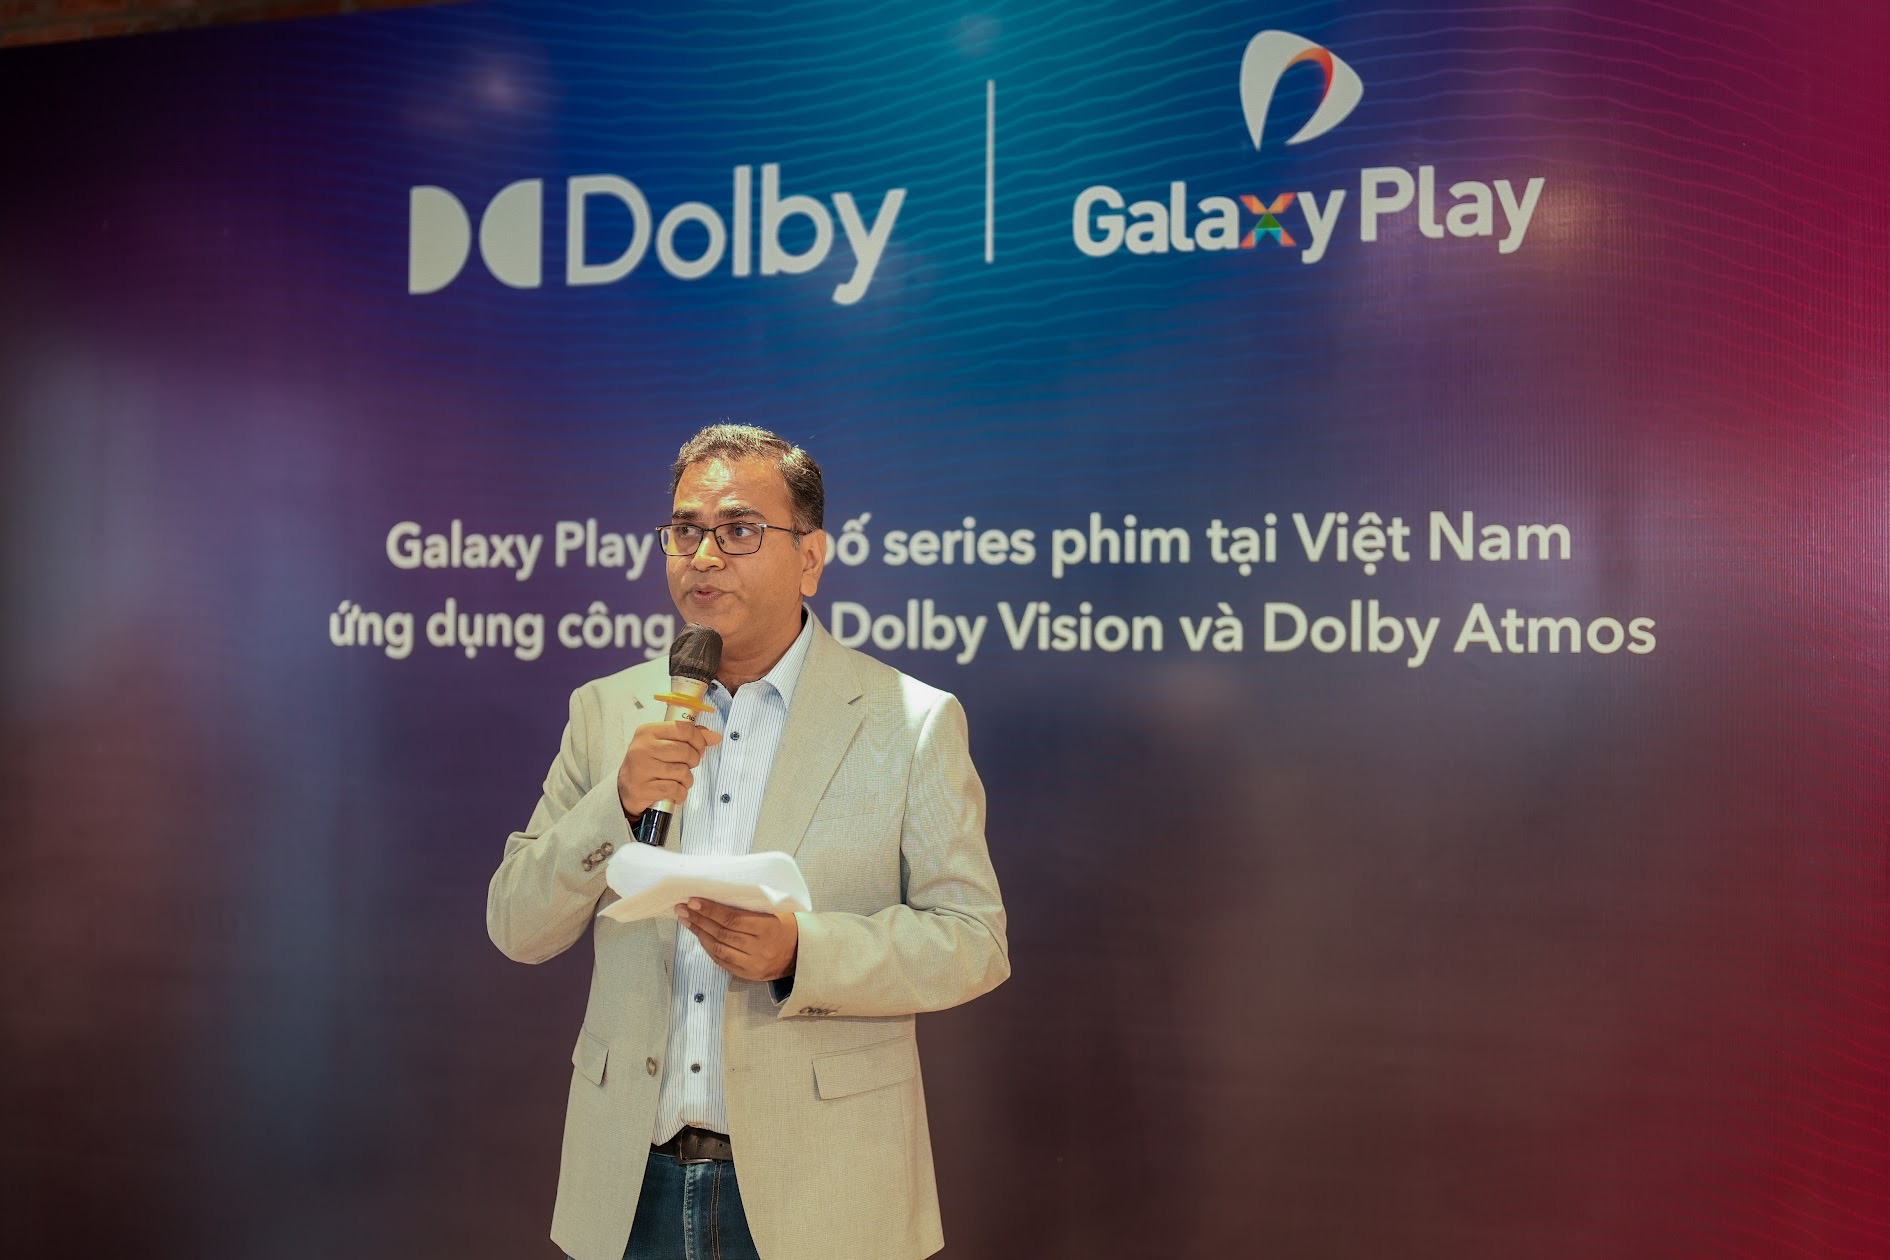 Mãn nhãn, đã tai với công nghệ Dolby trong series phim Việt đang gây sốt màn ảnh  - Ảnh 4.